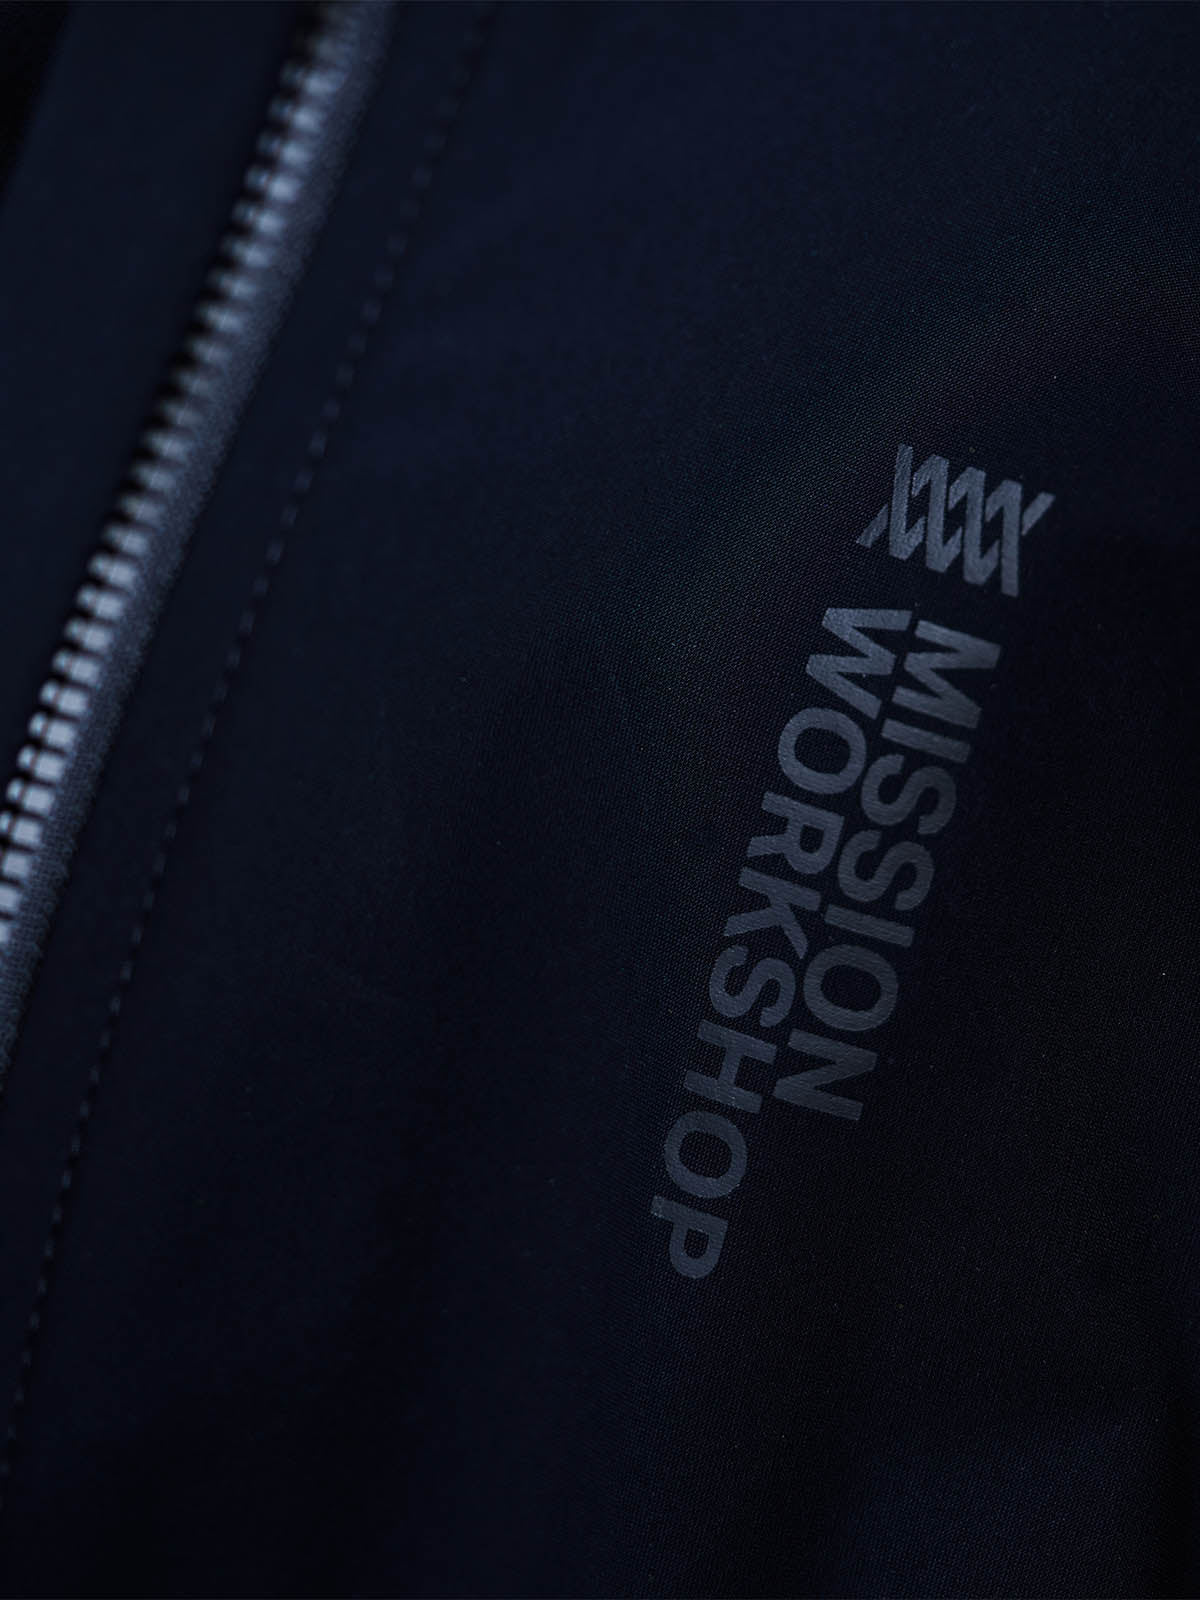 Mission Pro Jersey Women's by Mission Workshop - Säänkestävät laukut ja tekniset vaatteet - San Francisco & Los Angeles - Kestävä - ikuinen takuu